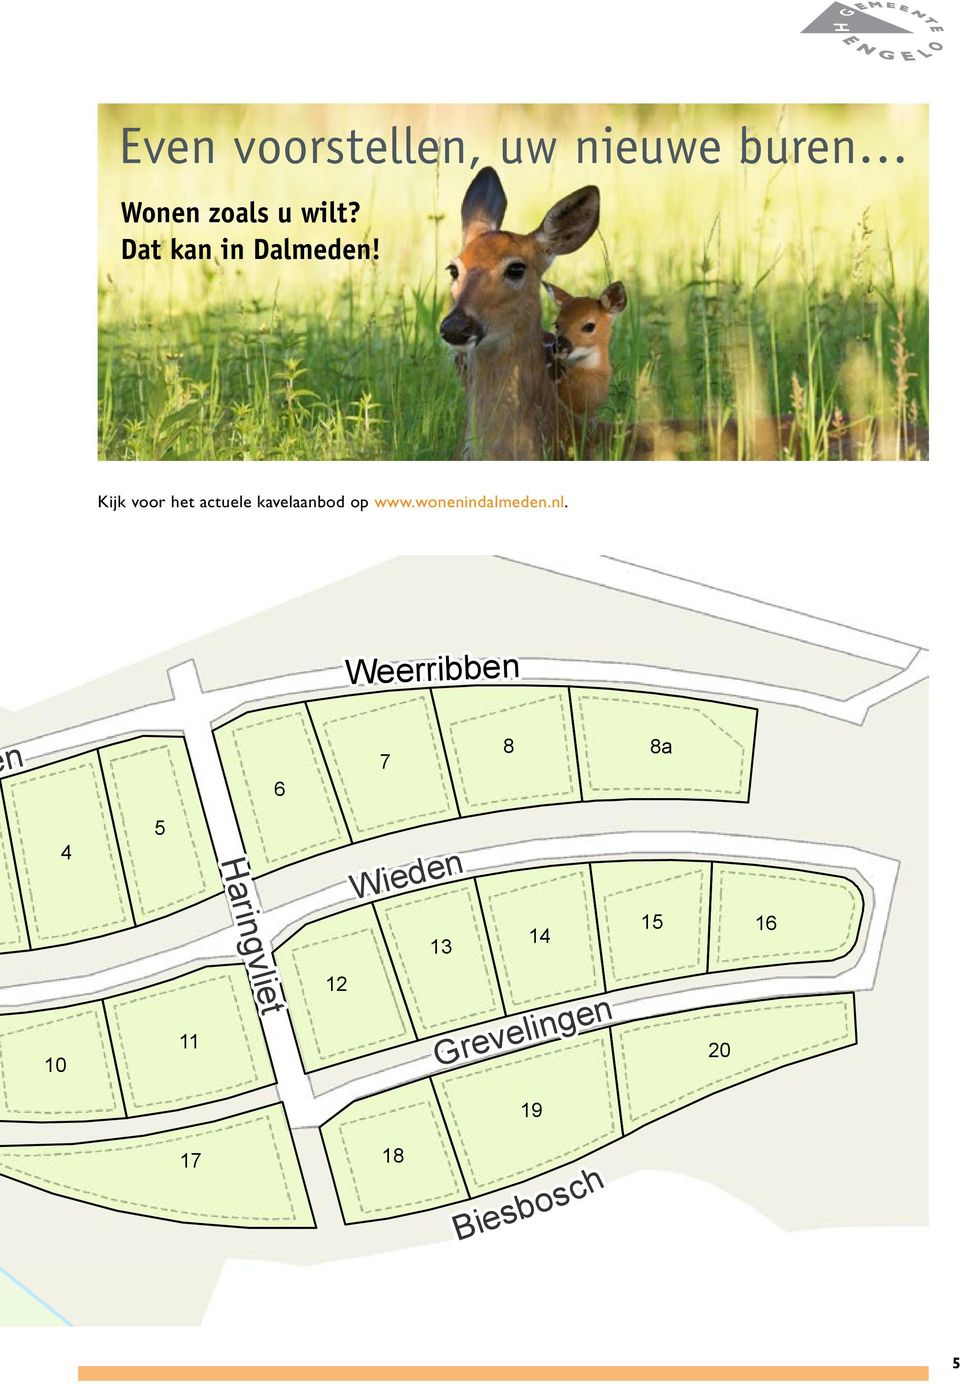 Kijk voor het actuele kavelaanbod op www.wonenindalmeden.nl.